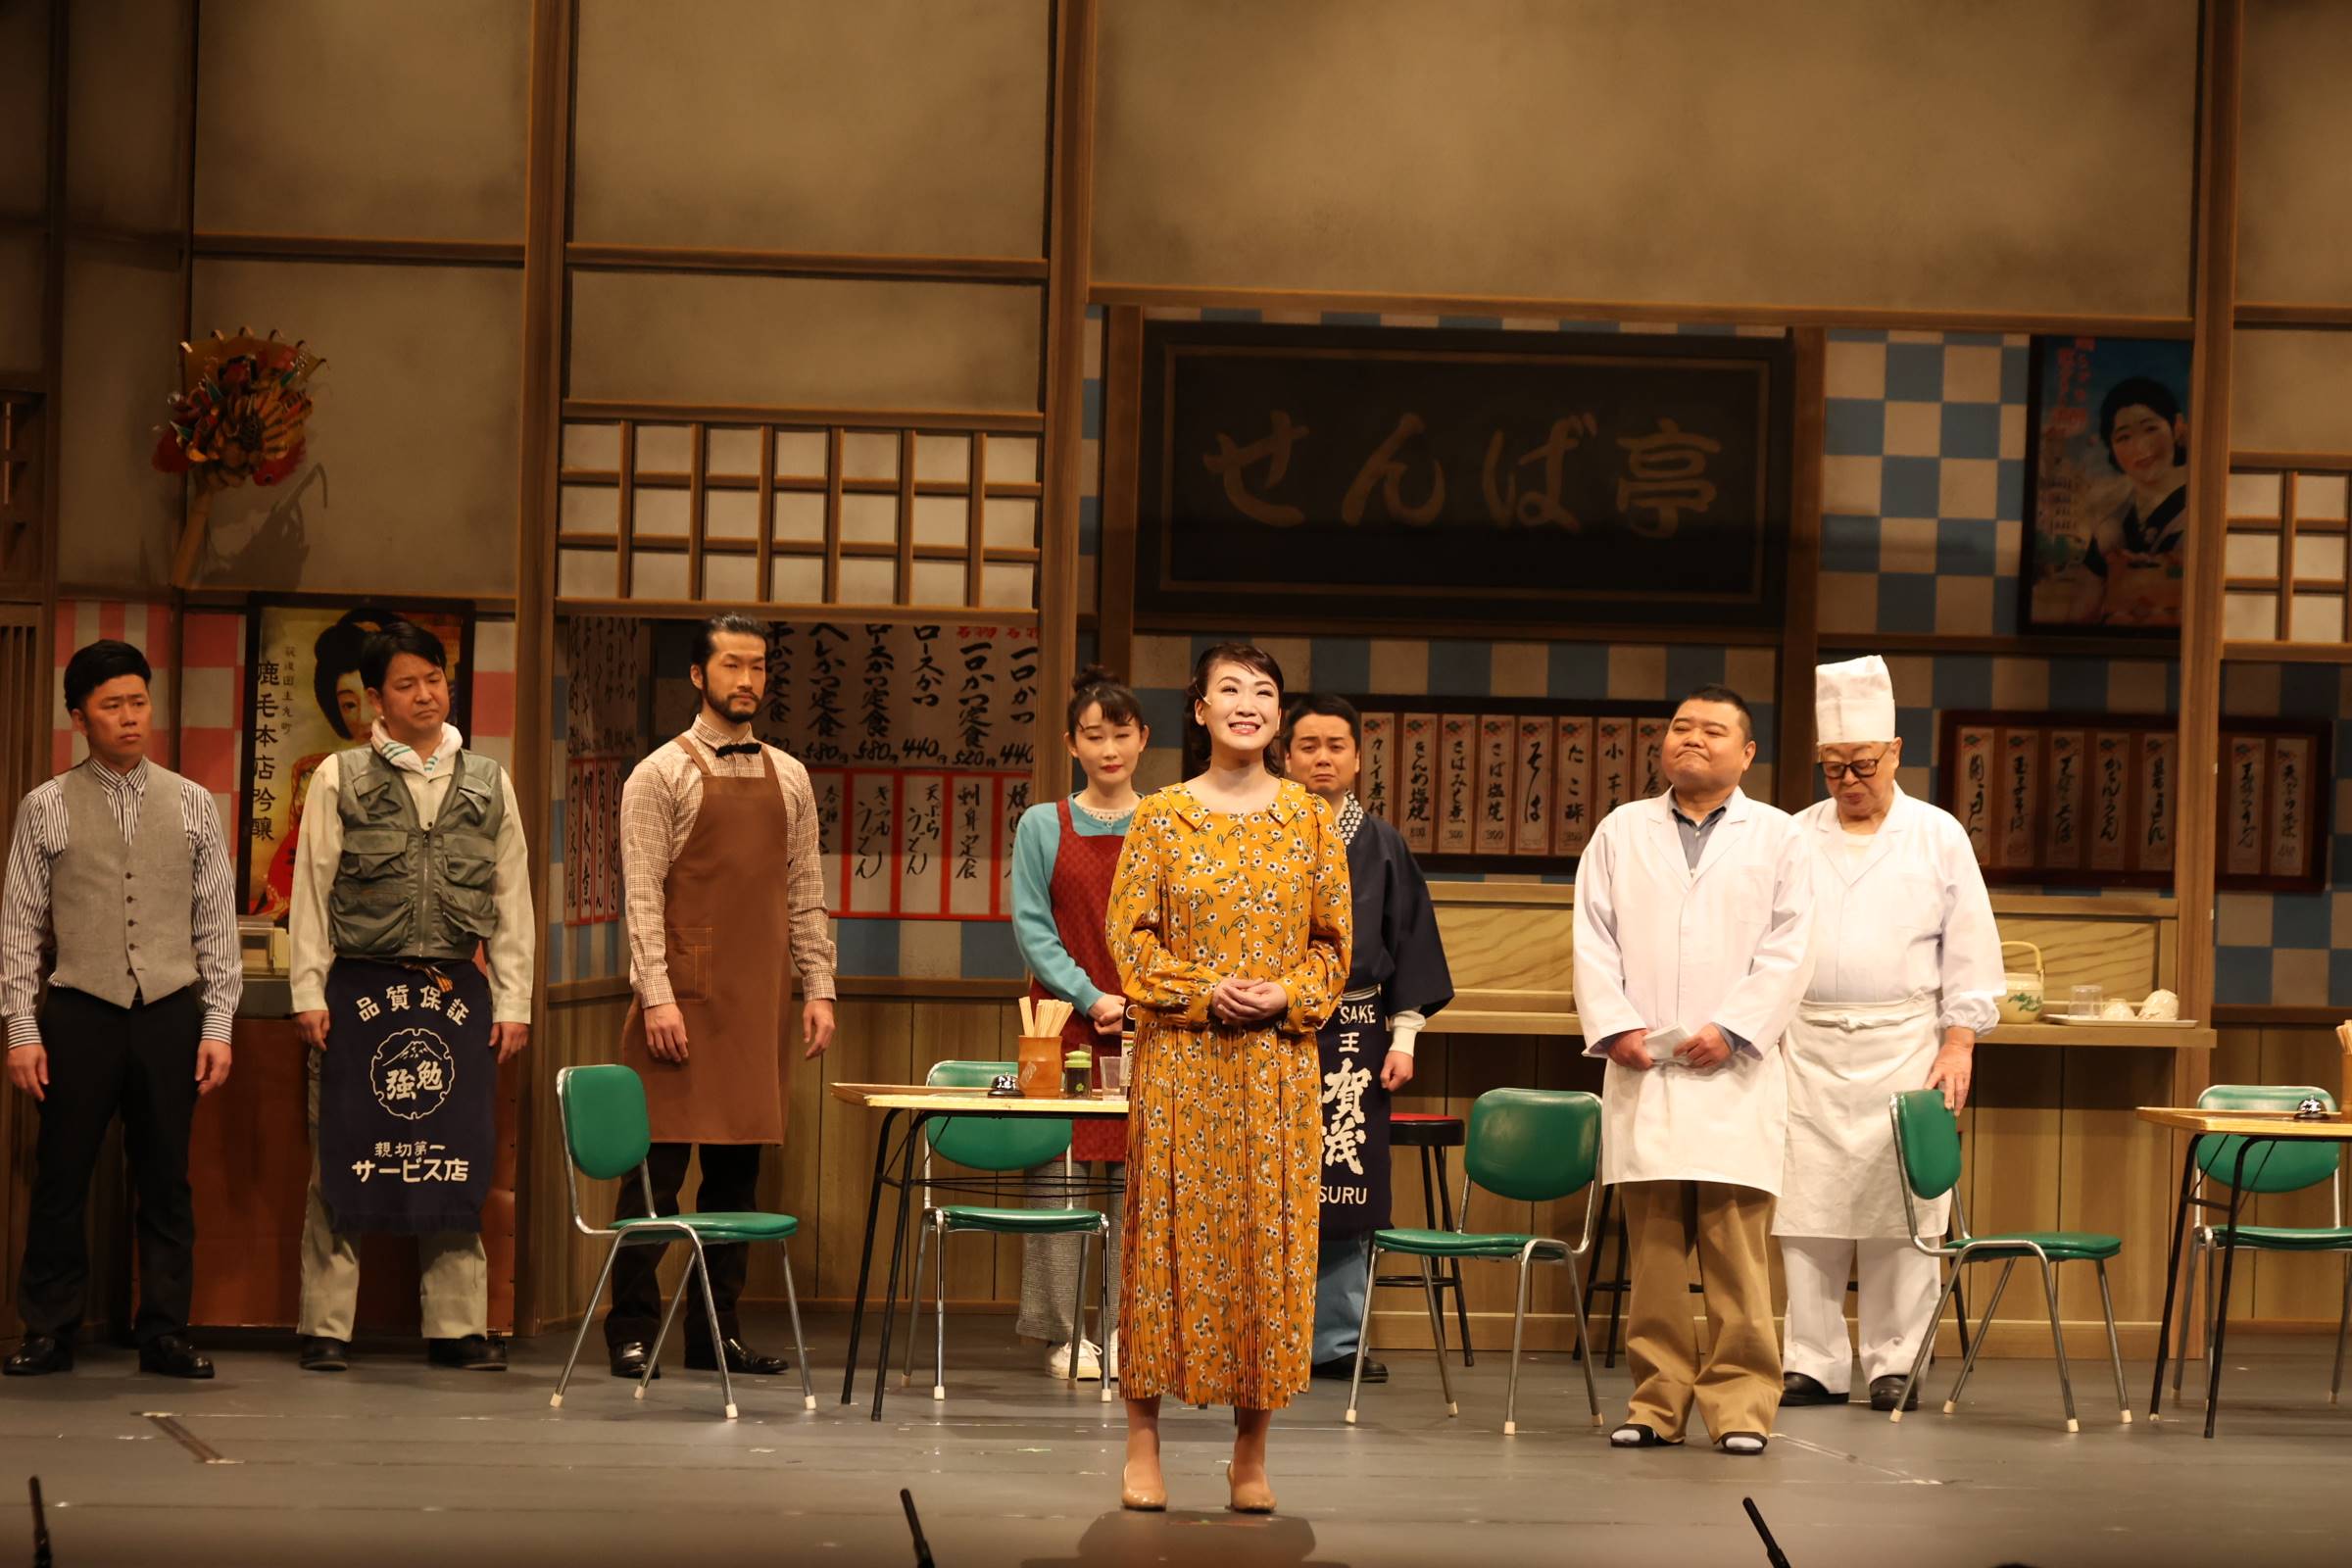 市川由紀乃、大阪・新歌舞伎座座長公演で吉本新喜劇と共演「夢がかないました」 - サンスポ